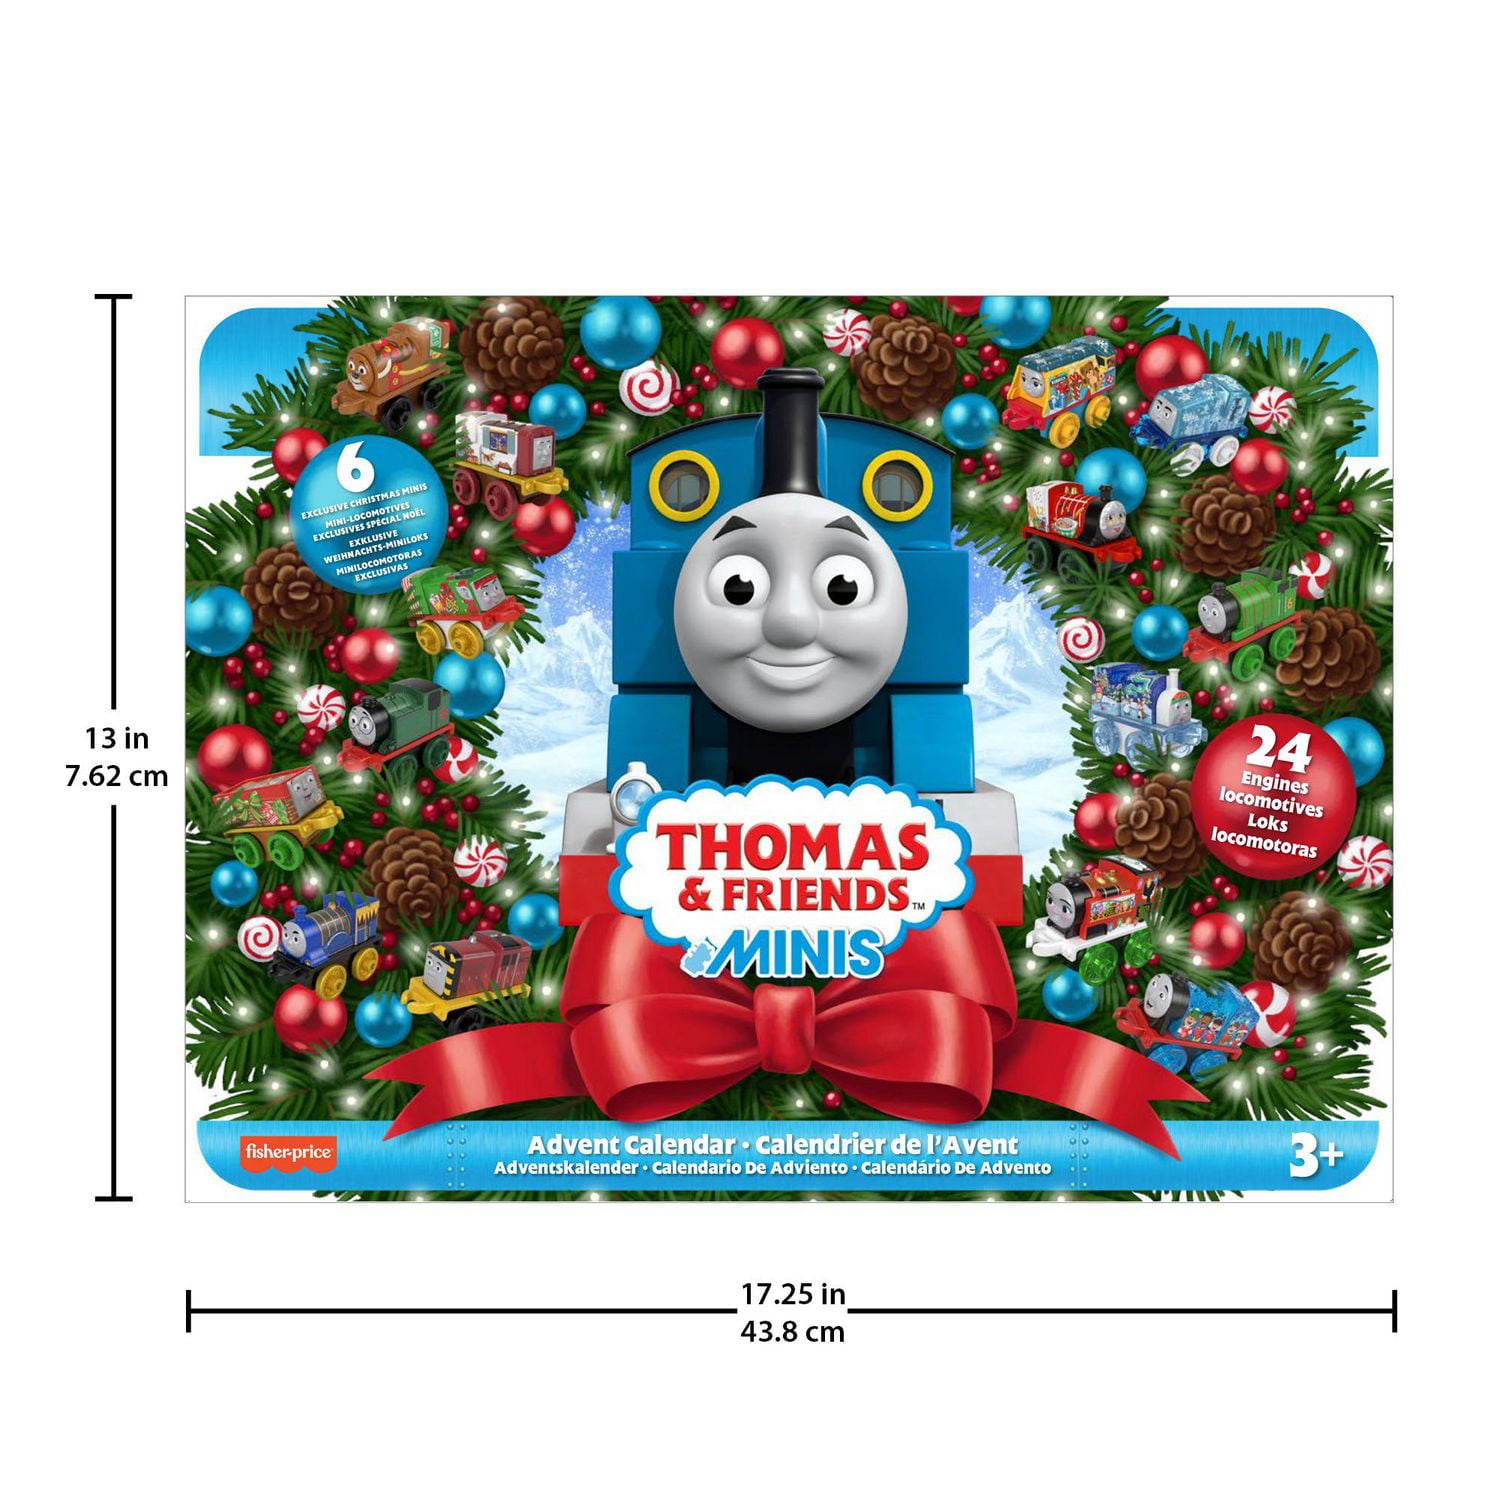 Thomas & Friends MINIS Train Advent Calendar 